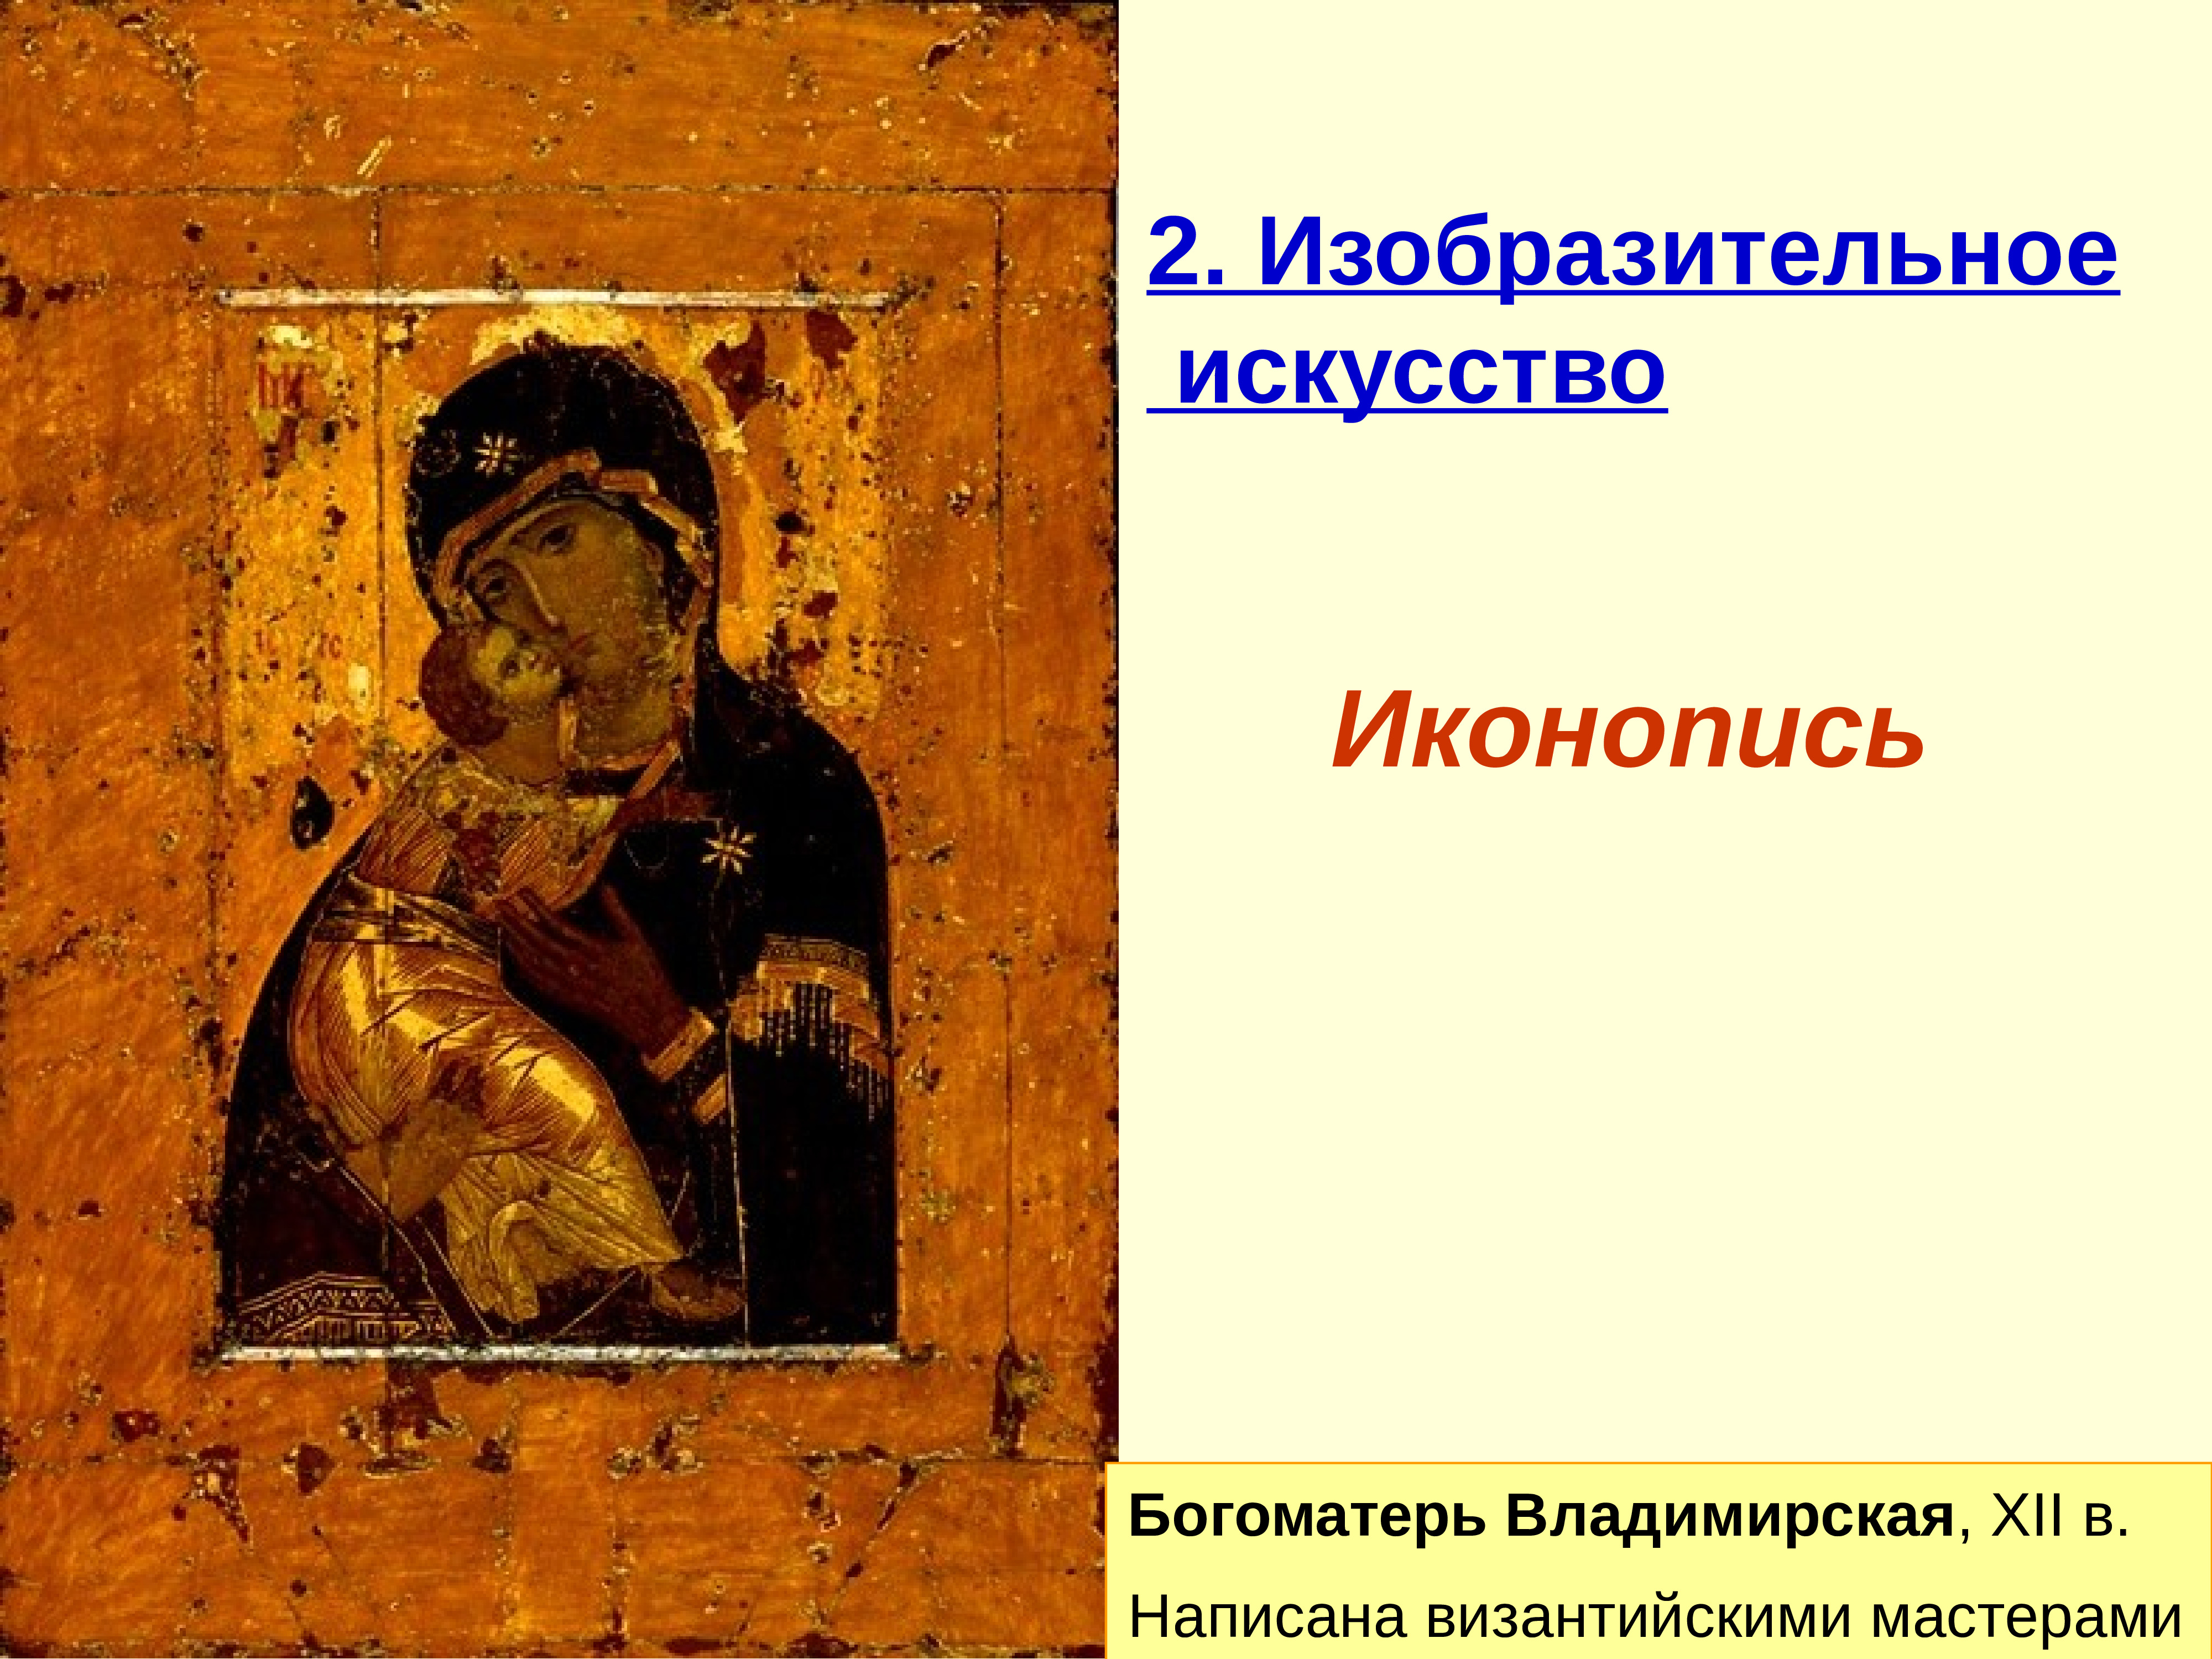 Икона Владимирской Богоматери Третьяковская галерея